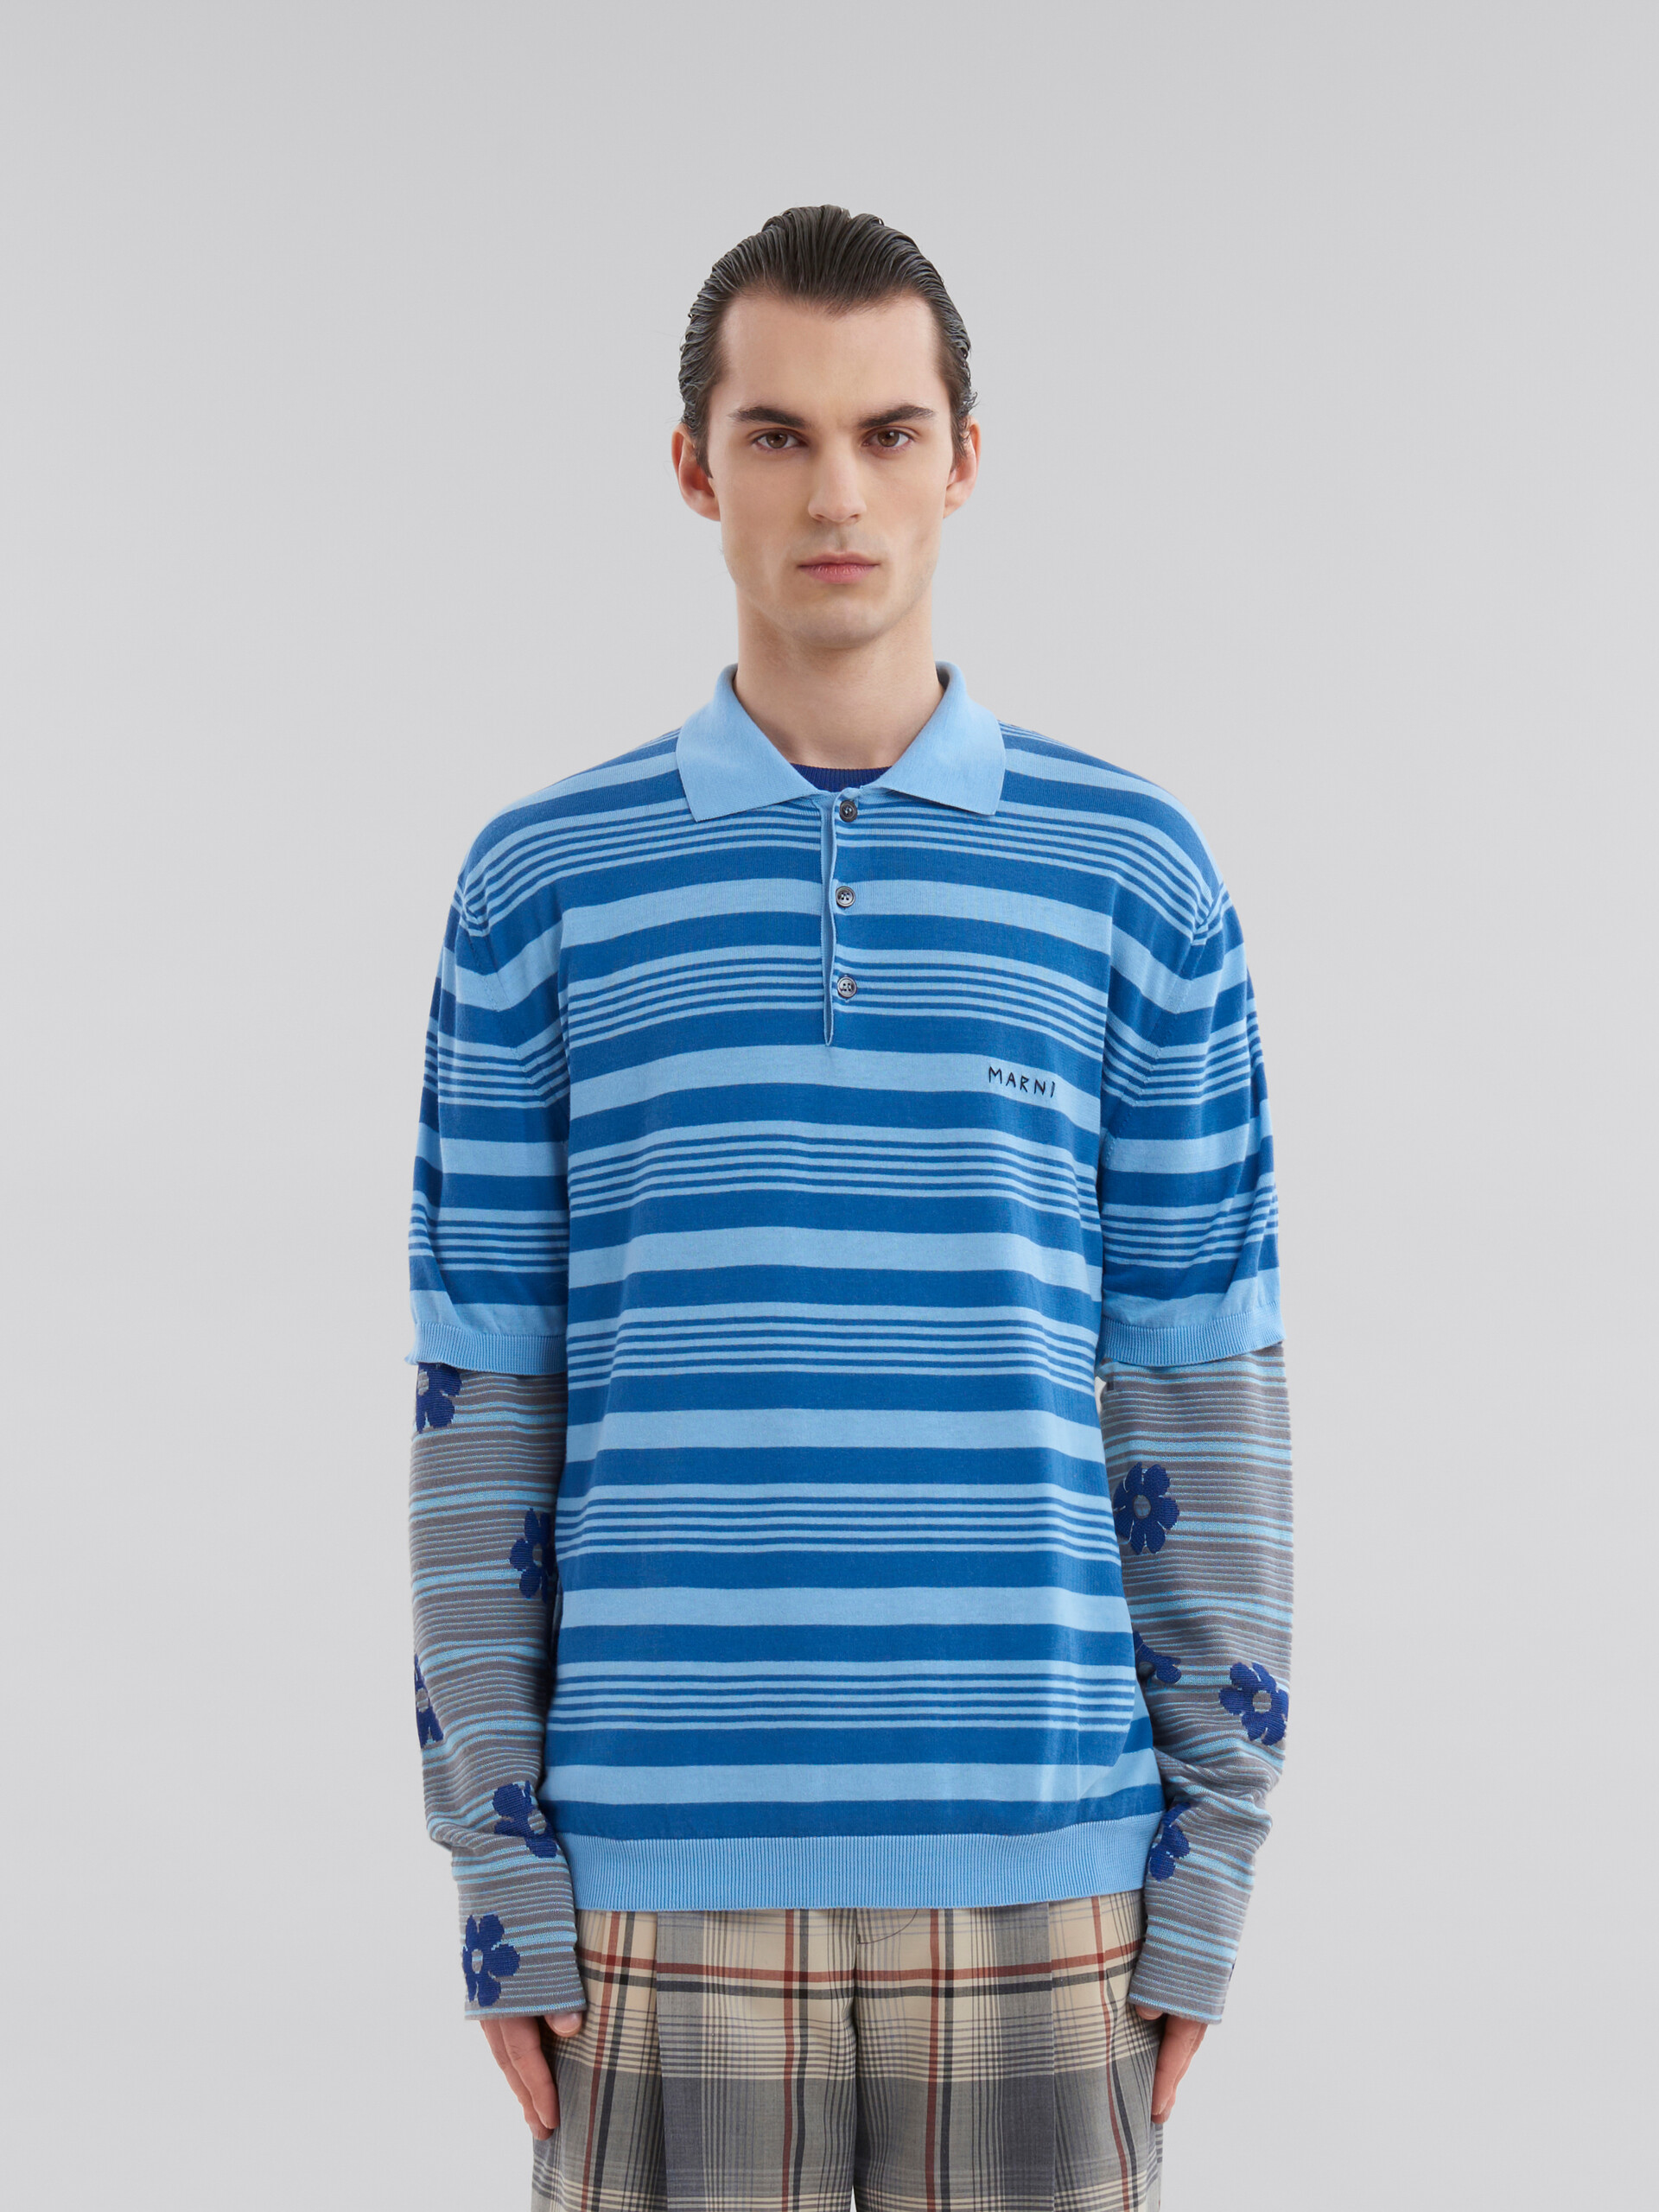 ブルー ストライプ コットン製 ポロシャツ、マルニメンディング - シャツ - Image 2